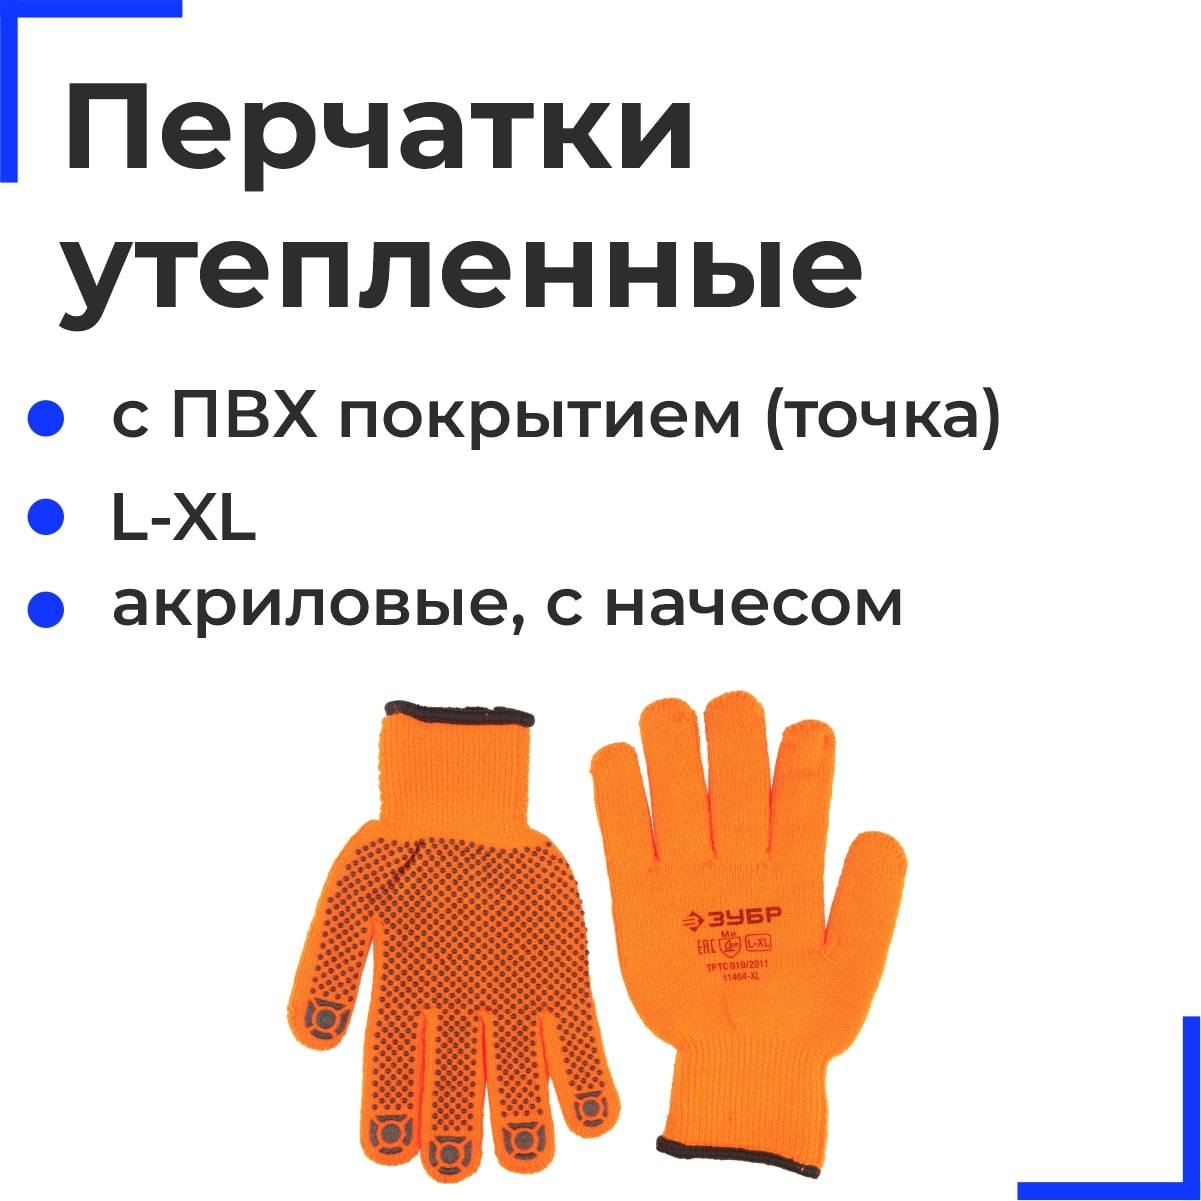 ЗУБР АНГАРА, размер L-XL, перчатки утепленные с начесом, акриловые, с ПВХ покрытием (точка)